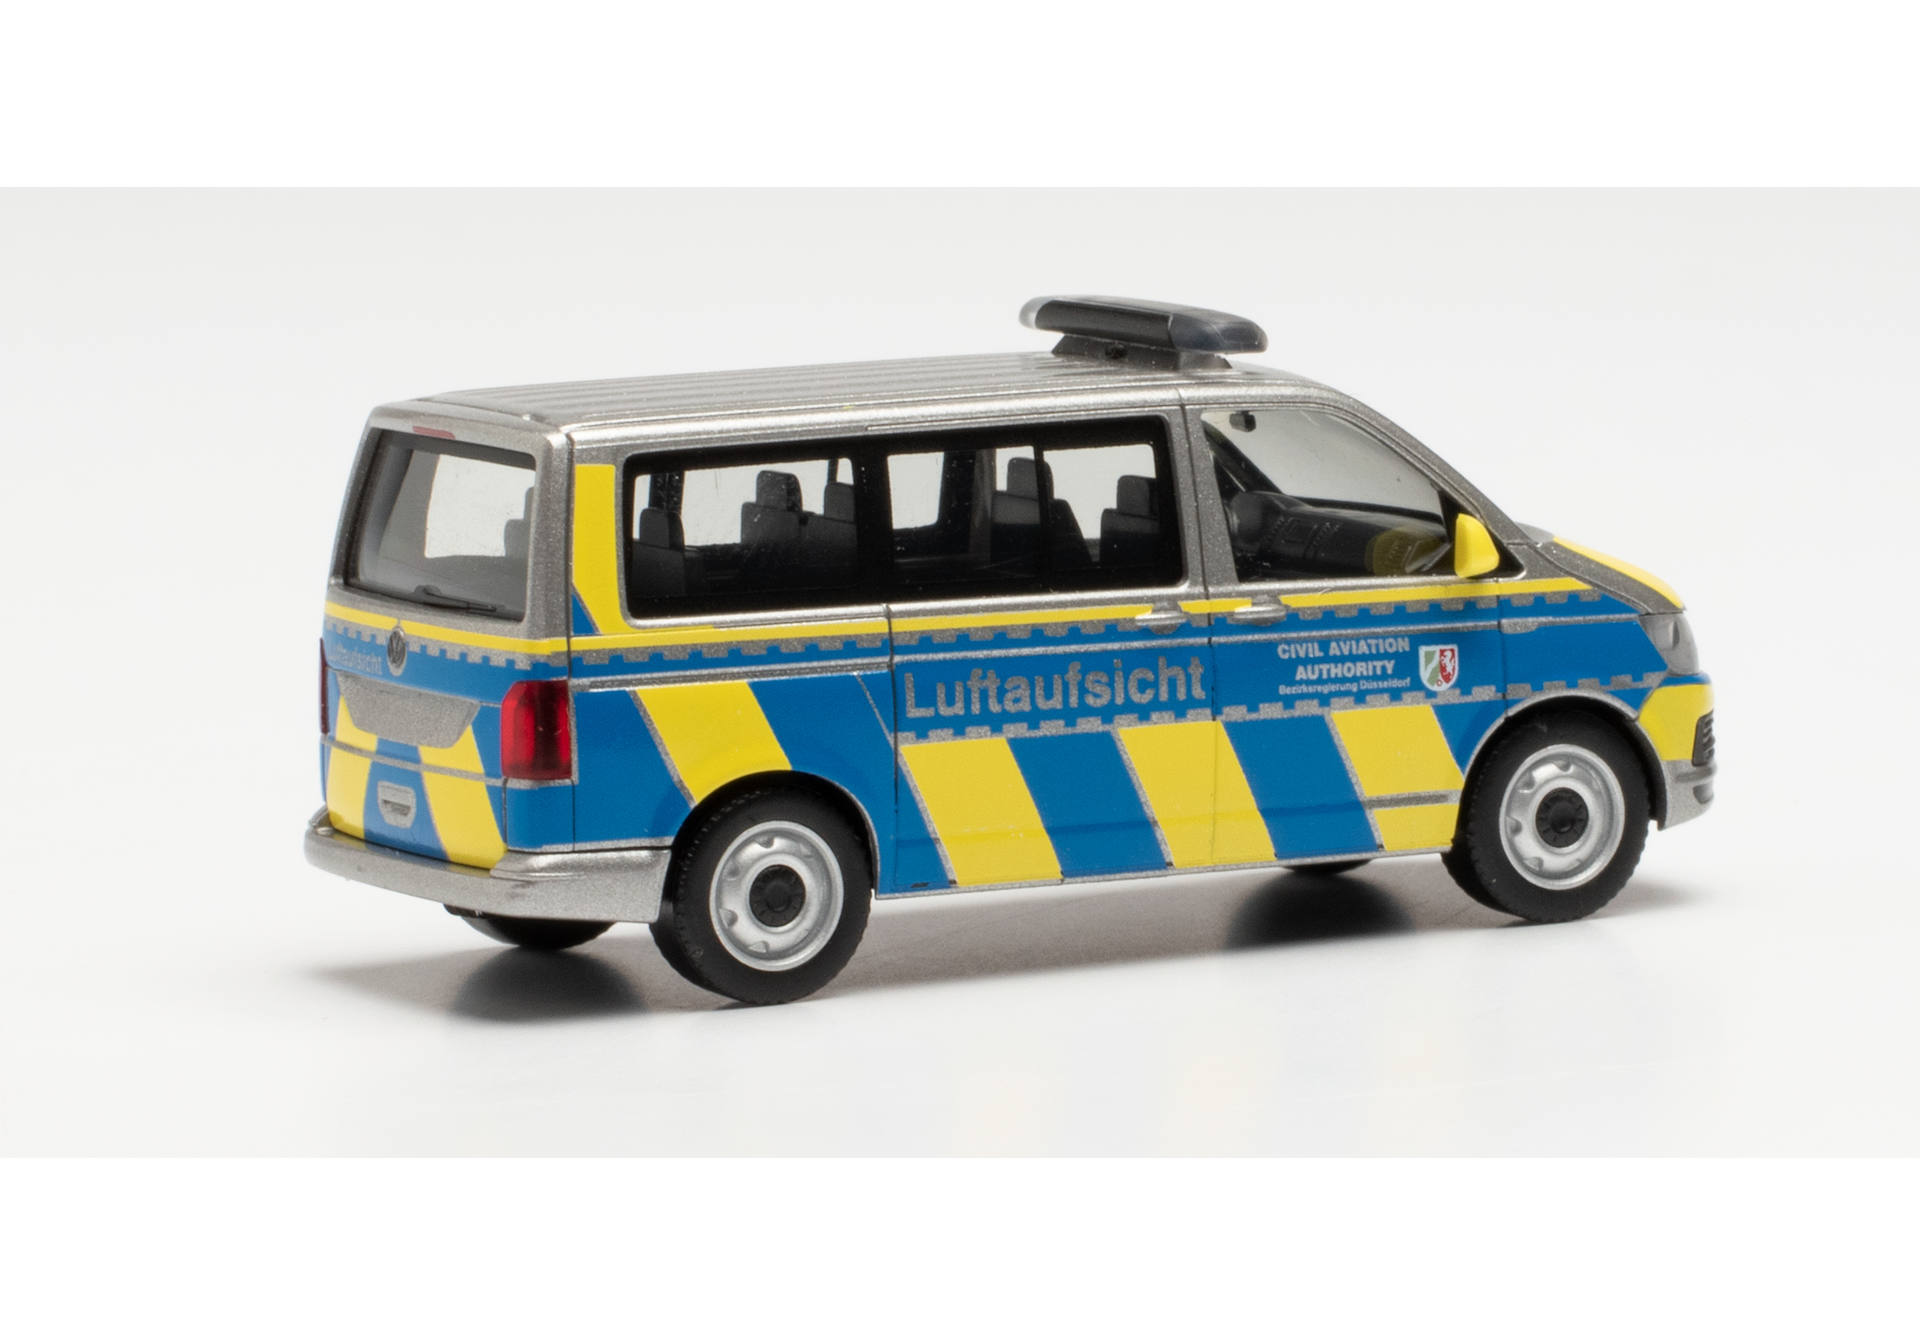 Volkswagen (VW) T6 bus "Civil Aviation Authority / Luftaufsicht"